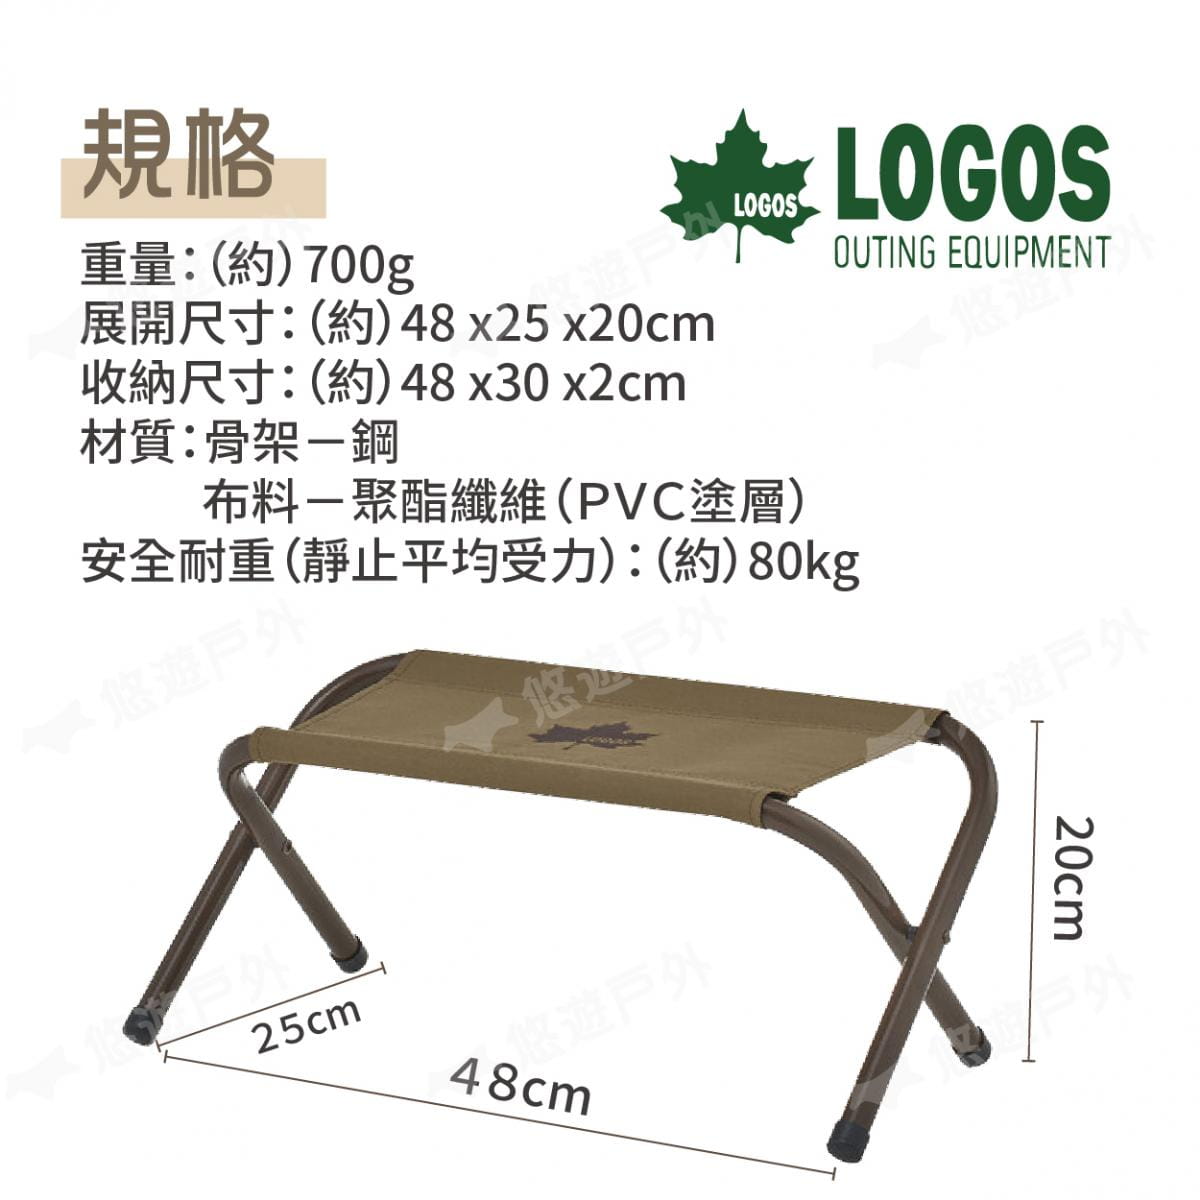 【LOGOS】兩用工具架椅凳 LG73188032 (悠遊戶外) 5